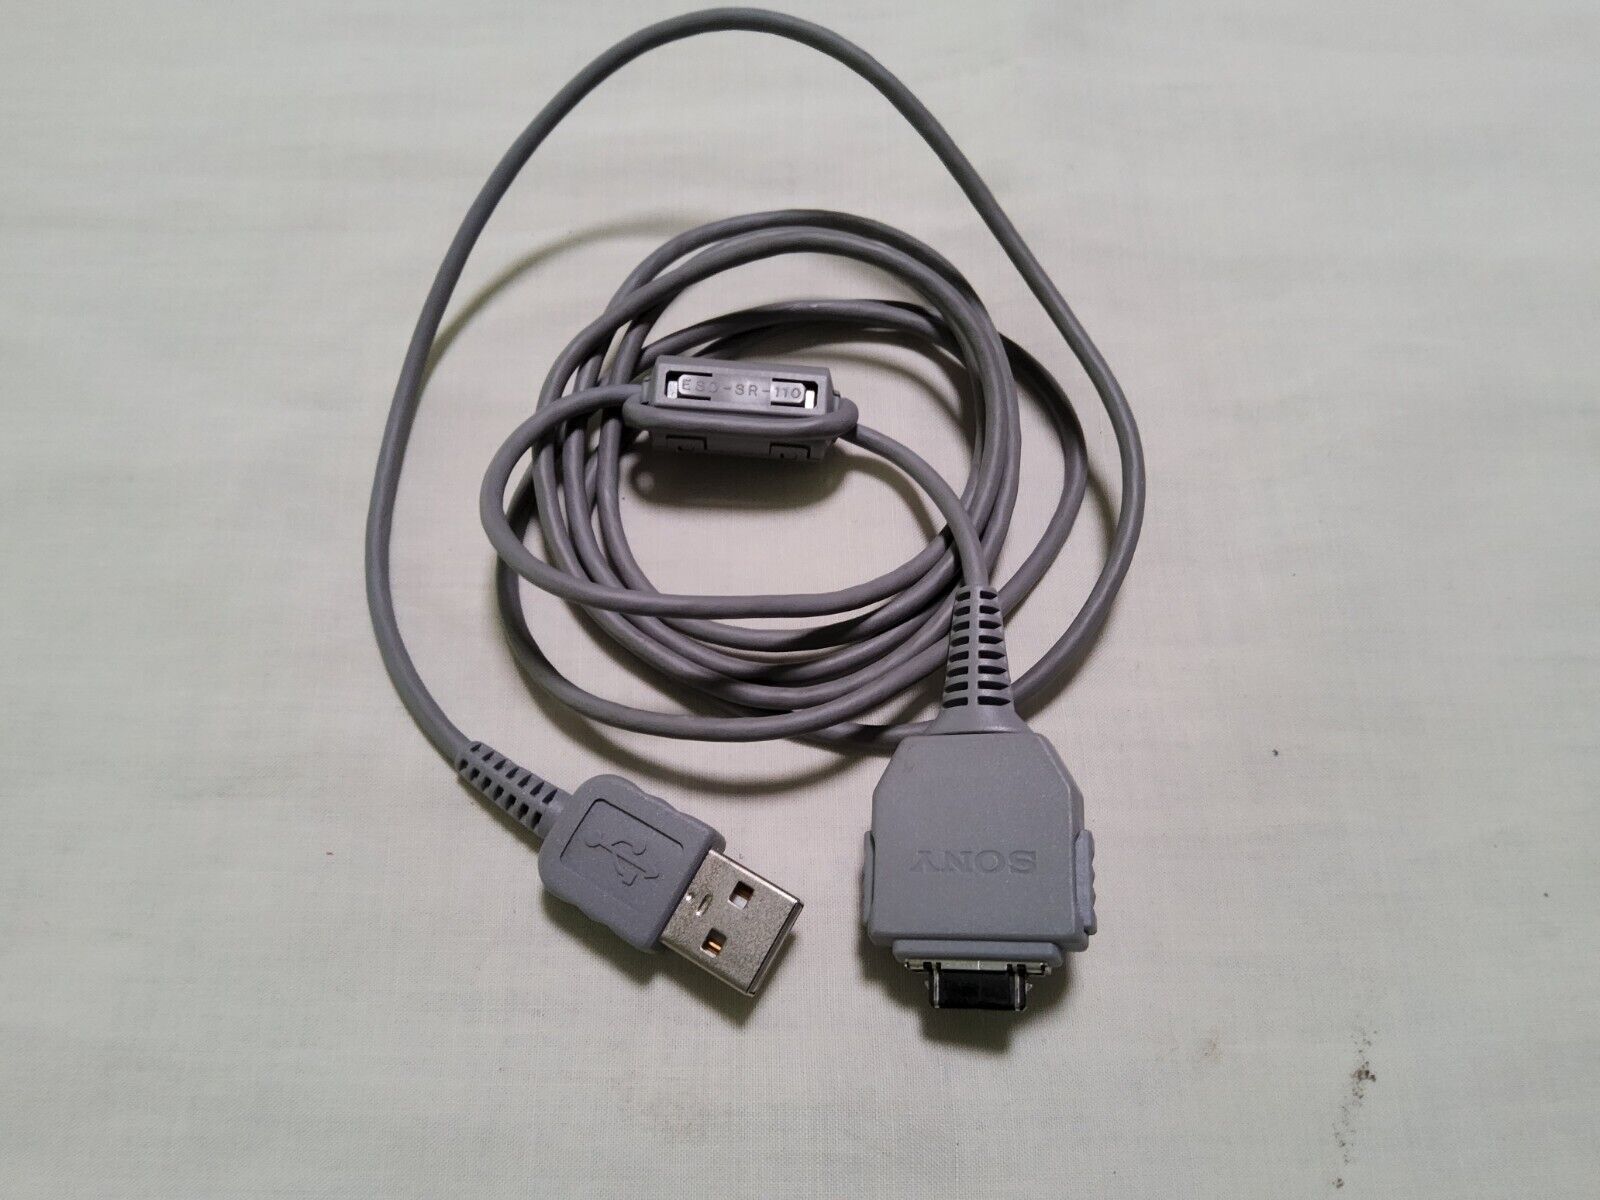 SONY VMC-MD1 USB Camera Cable for Cyber-Shot DSC-W90, DSC-W100, DSC-W110 DSC-120